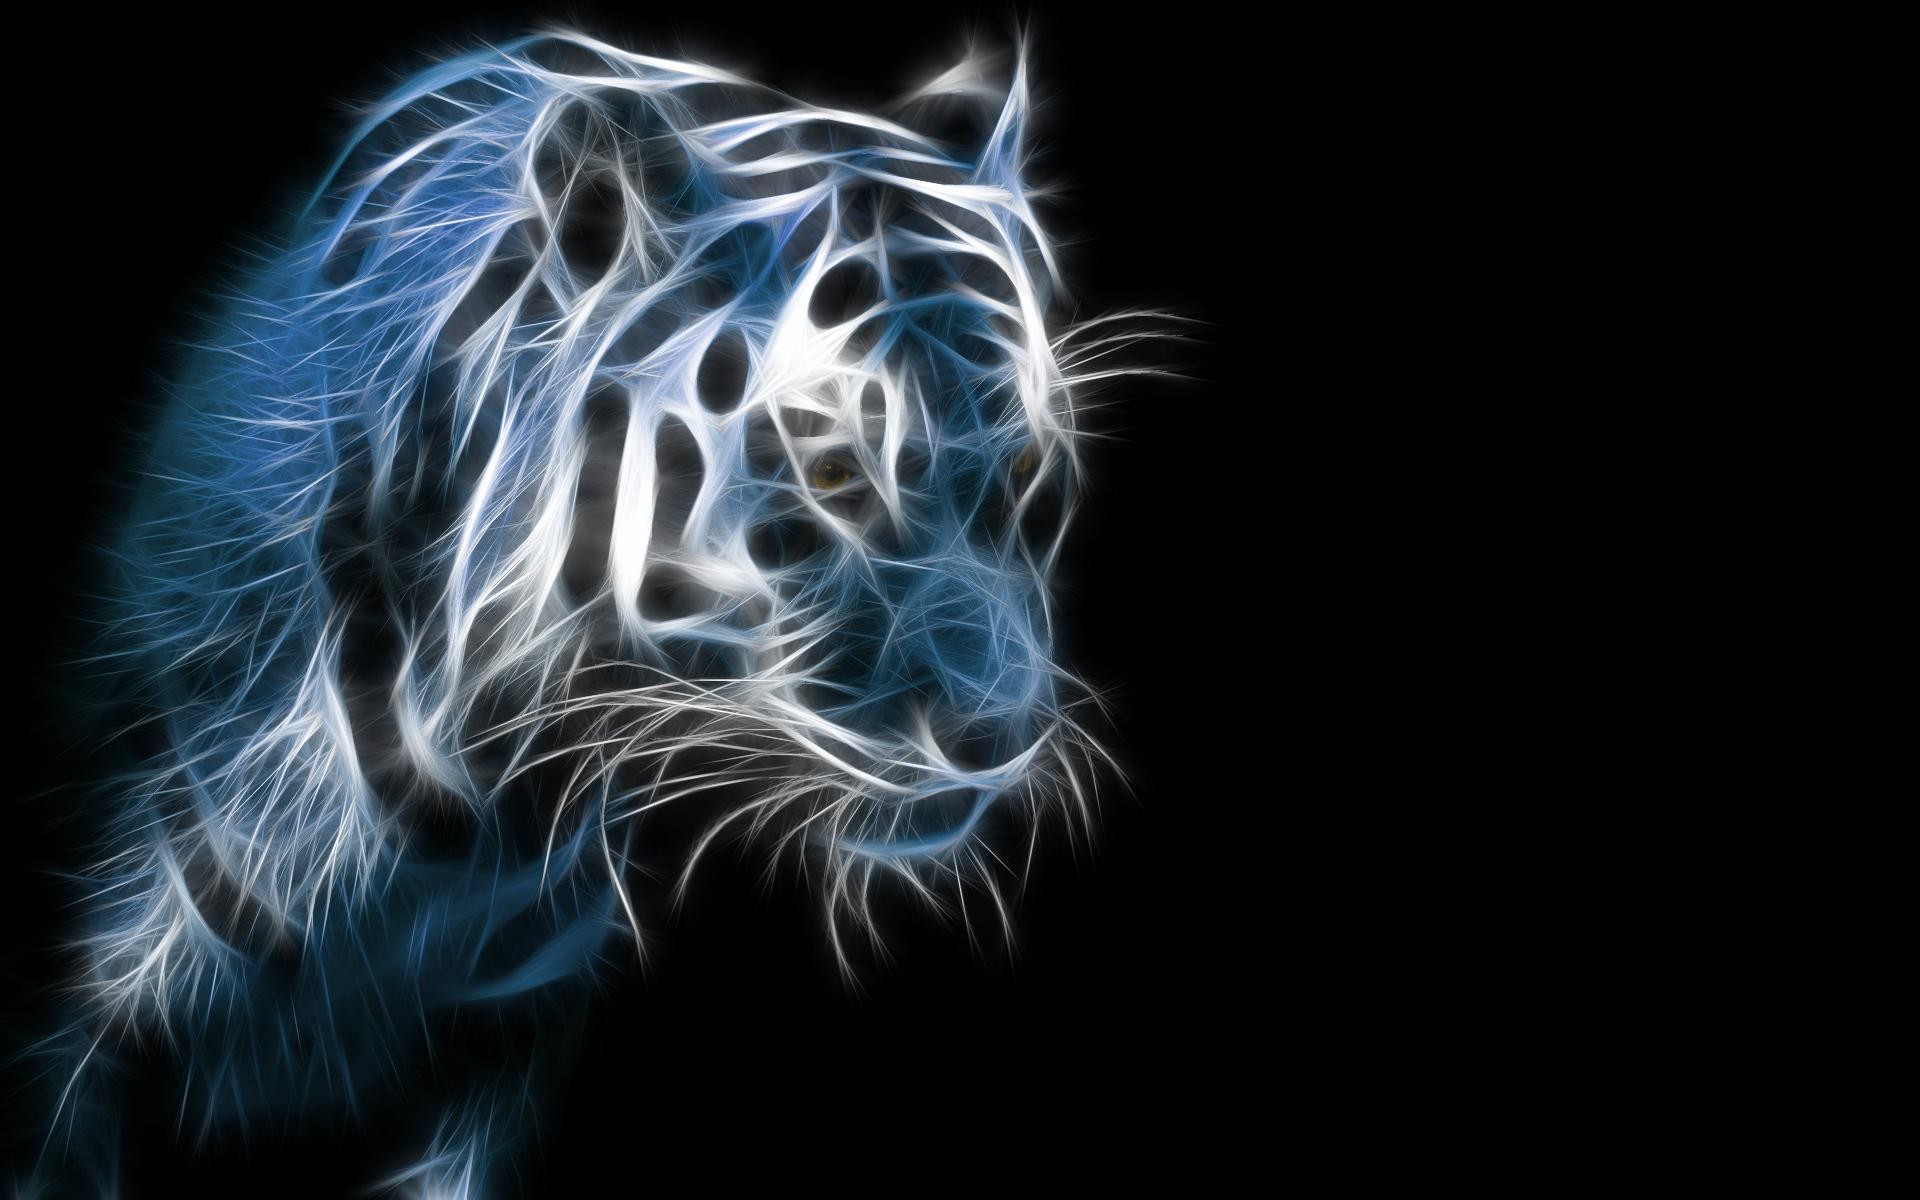 papel pintado de tigre de neón,bigotes,felidae,grandes felinos,fauna silvestre,azul eléctrico